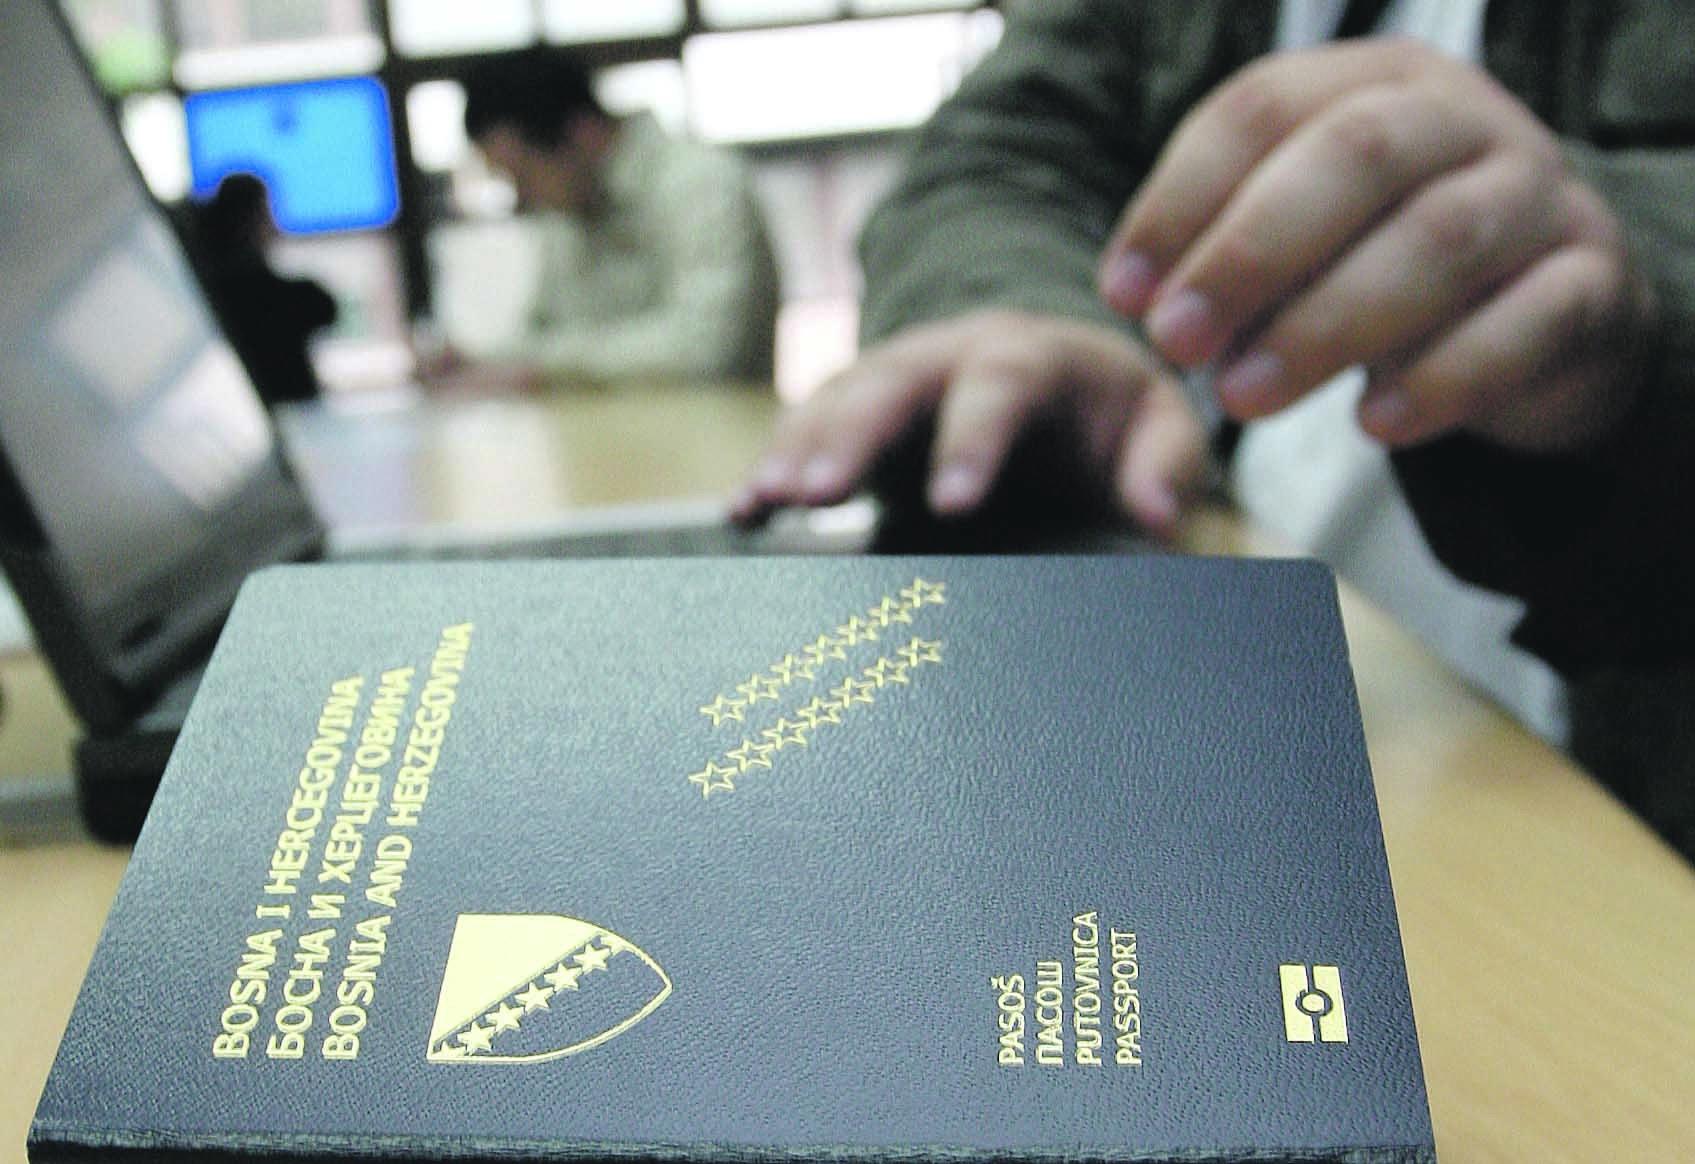 Bh. pasoš jedan od najzahtjevnijih - Avaz